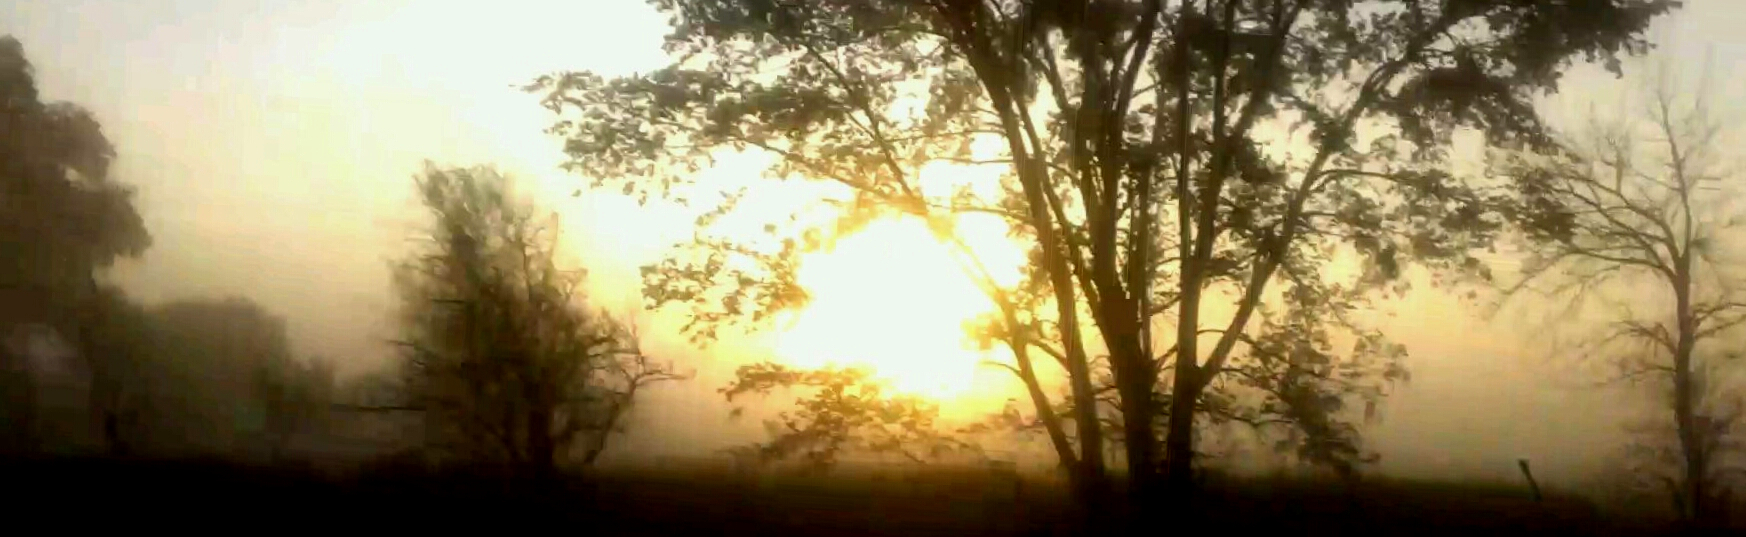 Foggy.Morning.jpg - undefined by Glenn Krieger